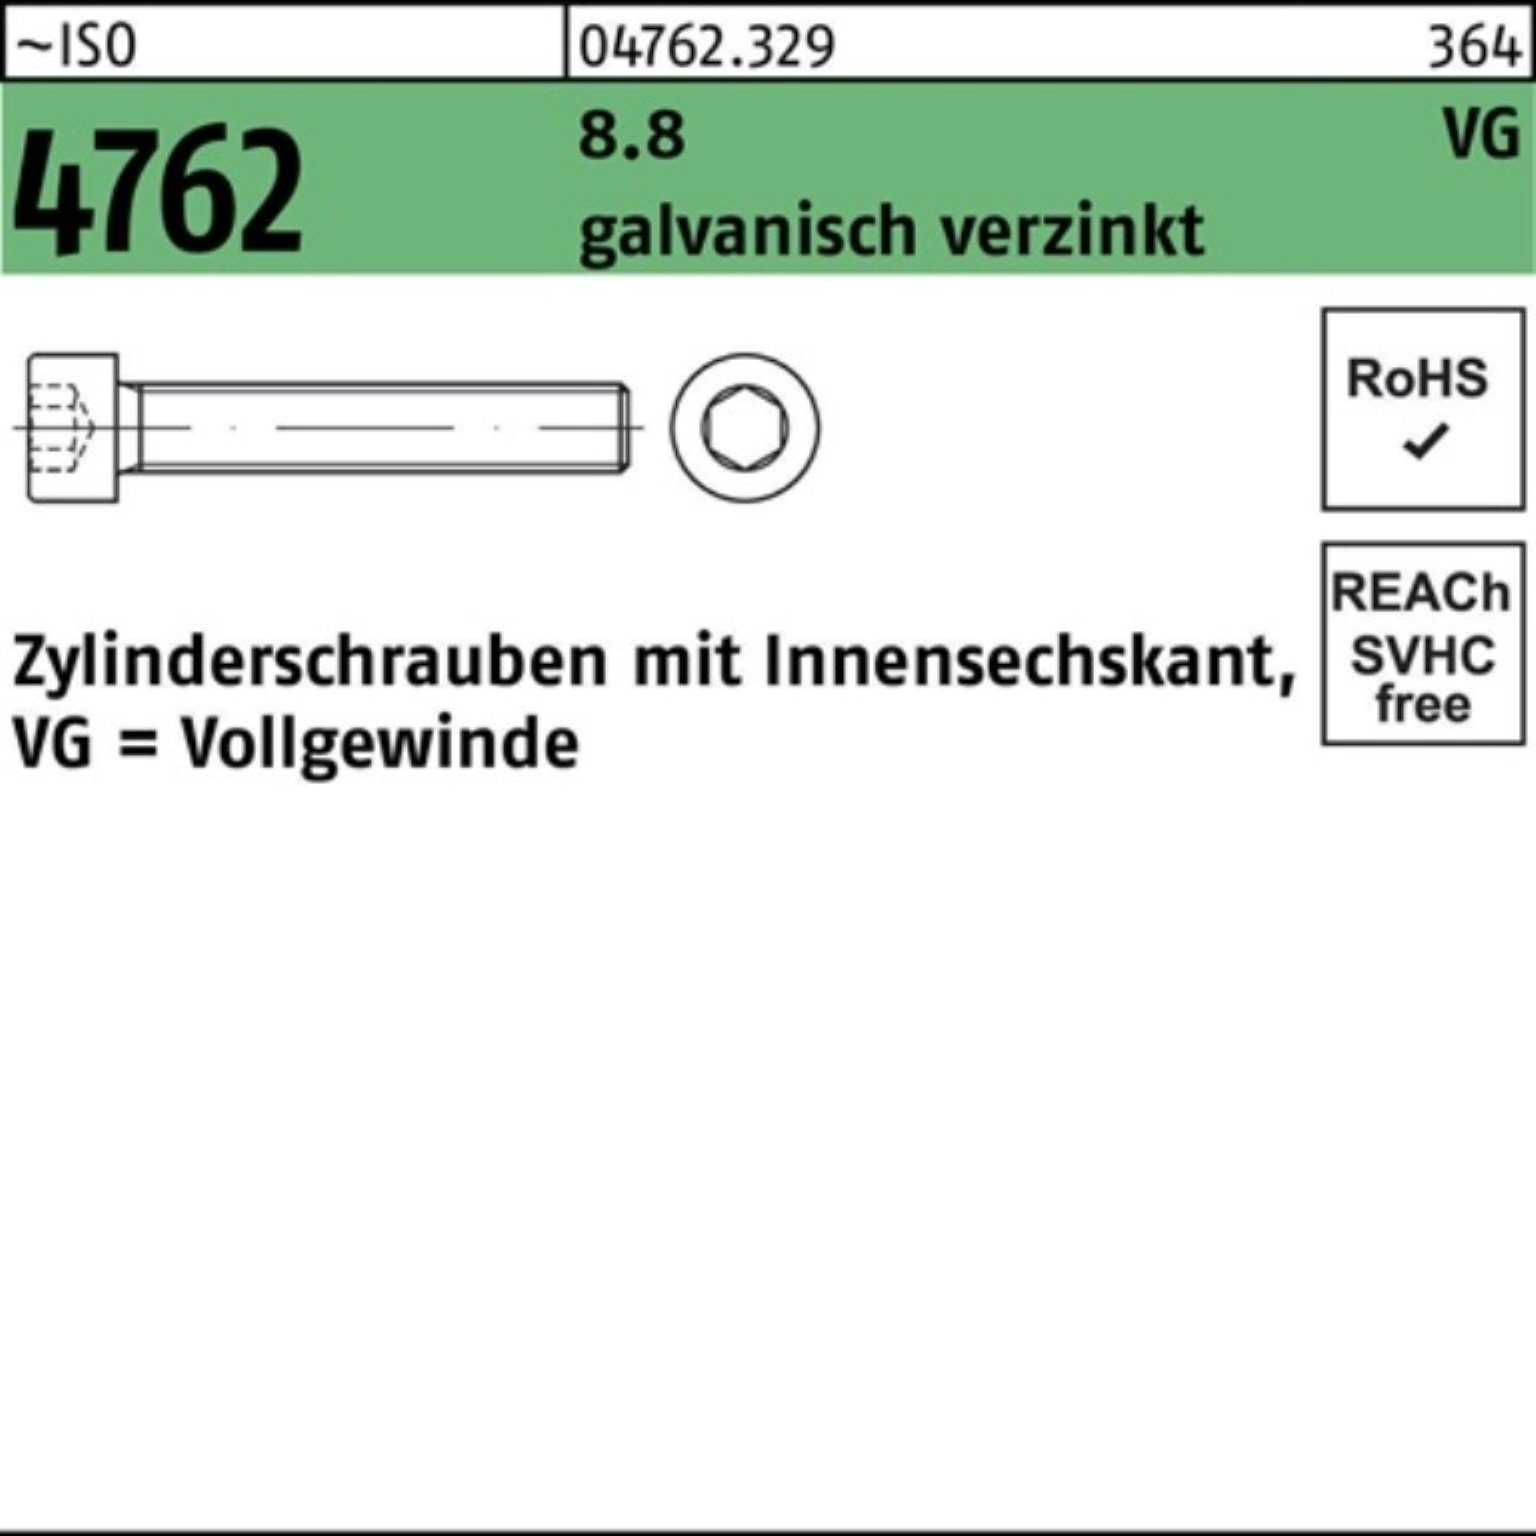 Zylinderschraube 4762 galv.verz. M6x40 Innen-6kt 8.8 Pack VG ISO Reyher Zylinderschraube 200er